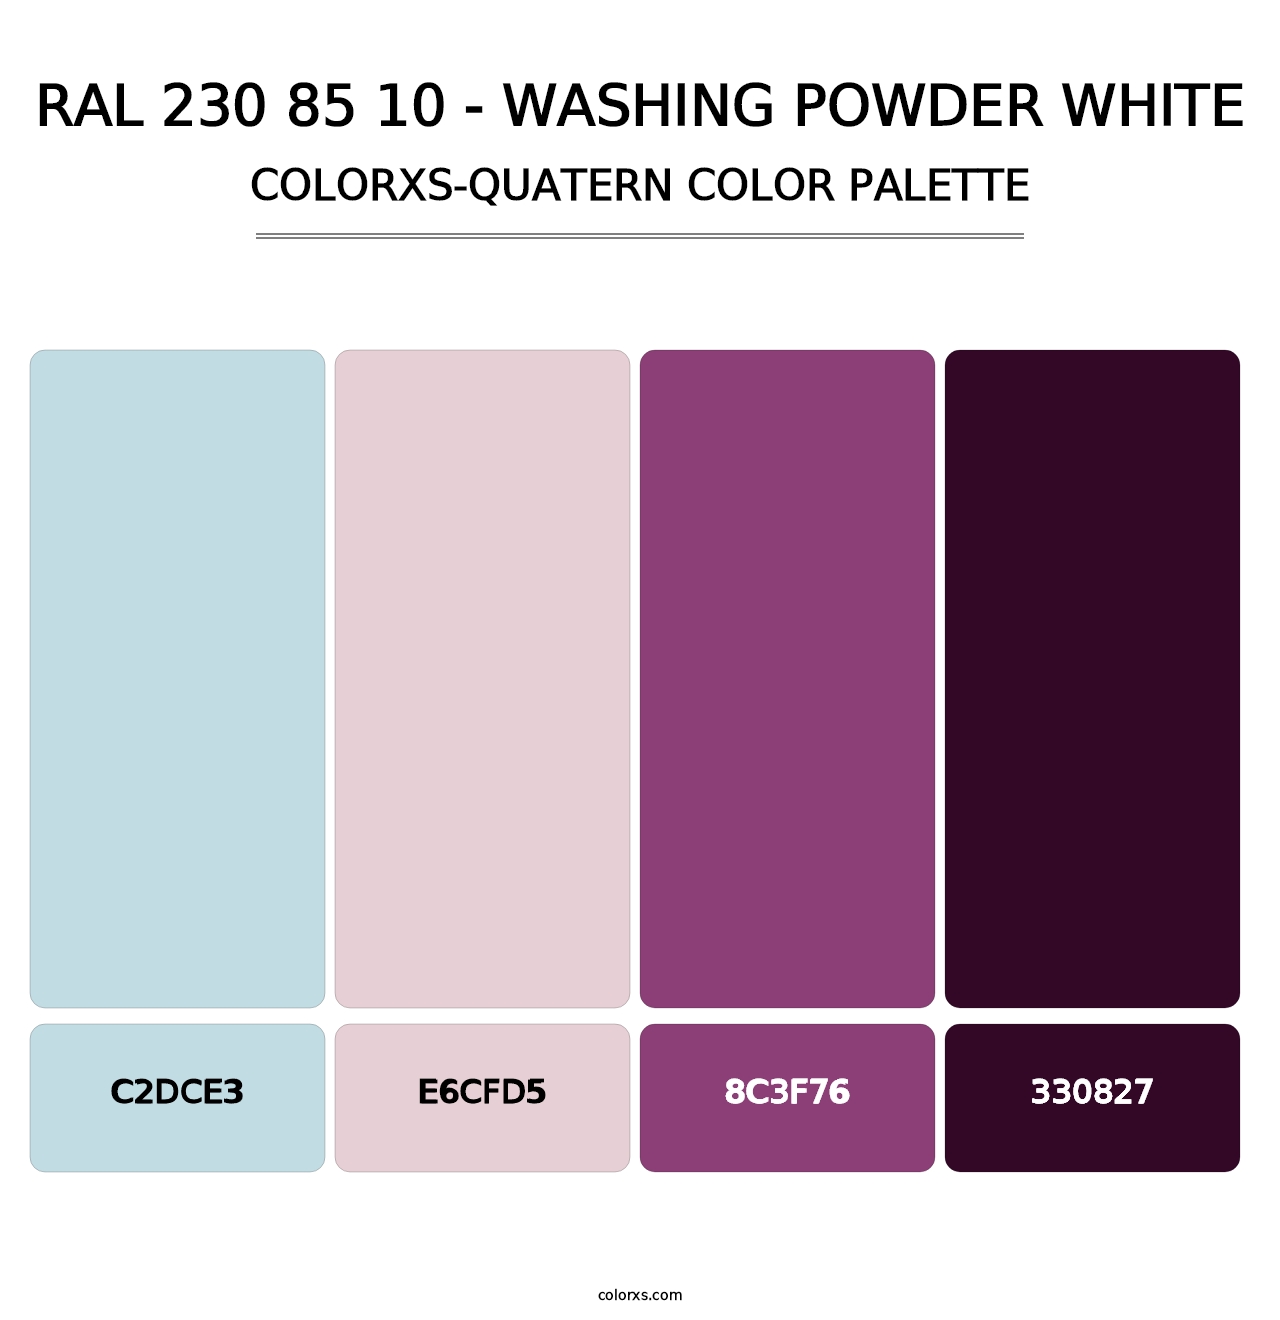 RAL 230 85 10 - Washing Powder White - Colorxs Quatern Palette